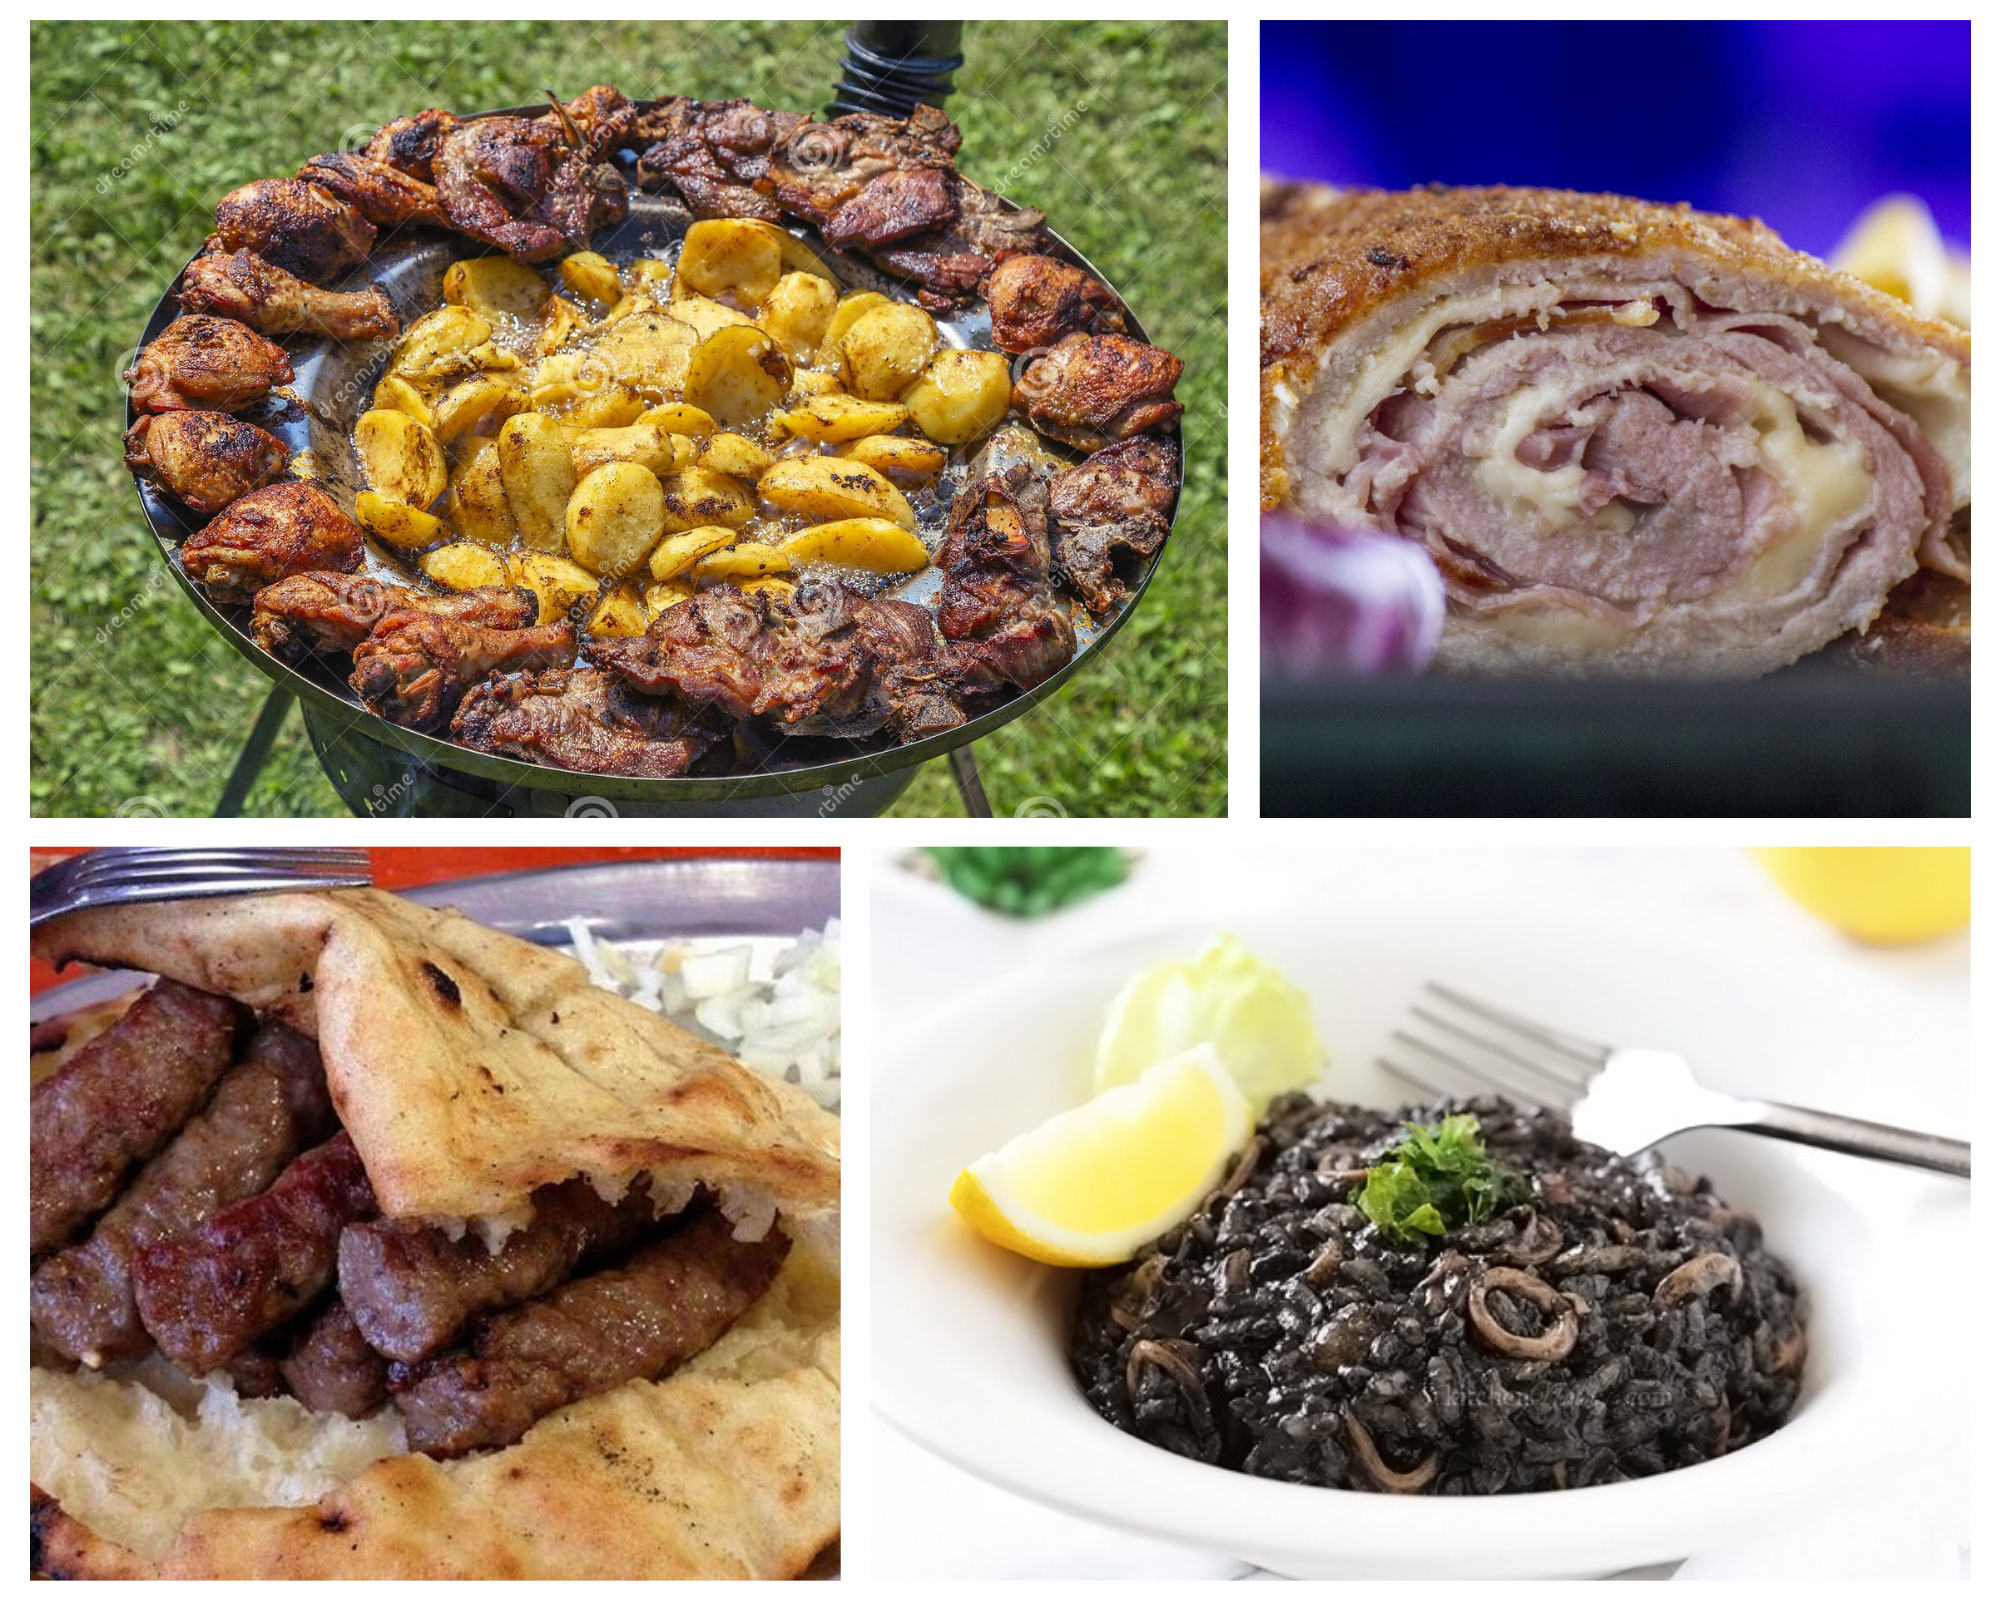 Kotlovina, Zagrebacki odrezak, Cevapi, Black risotto traditional food Croatia